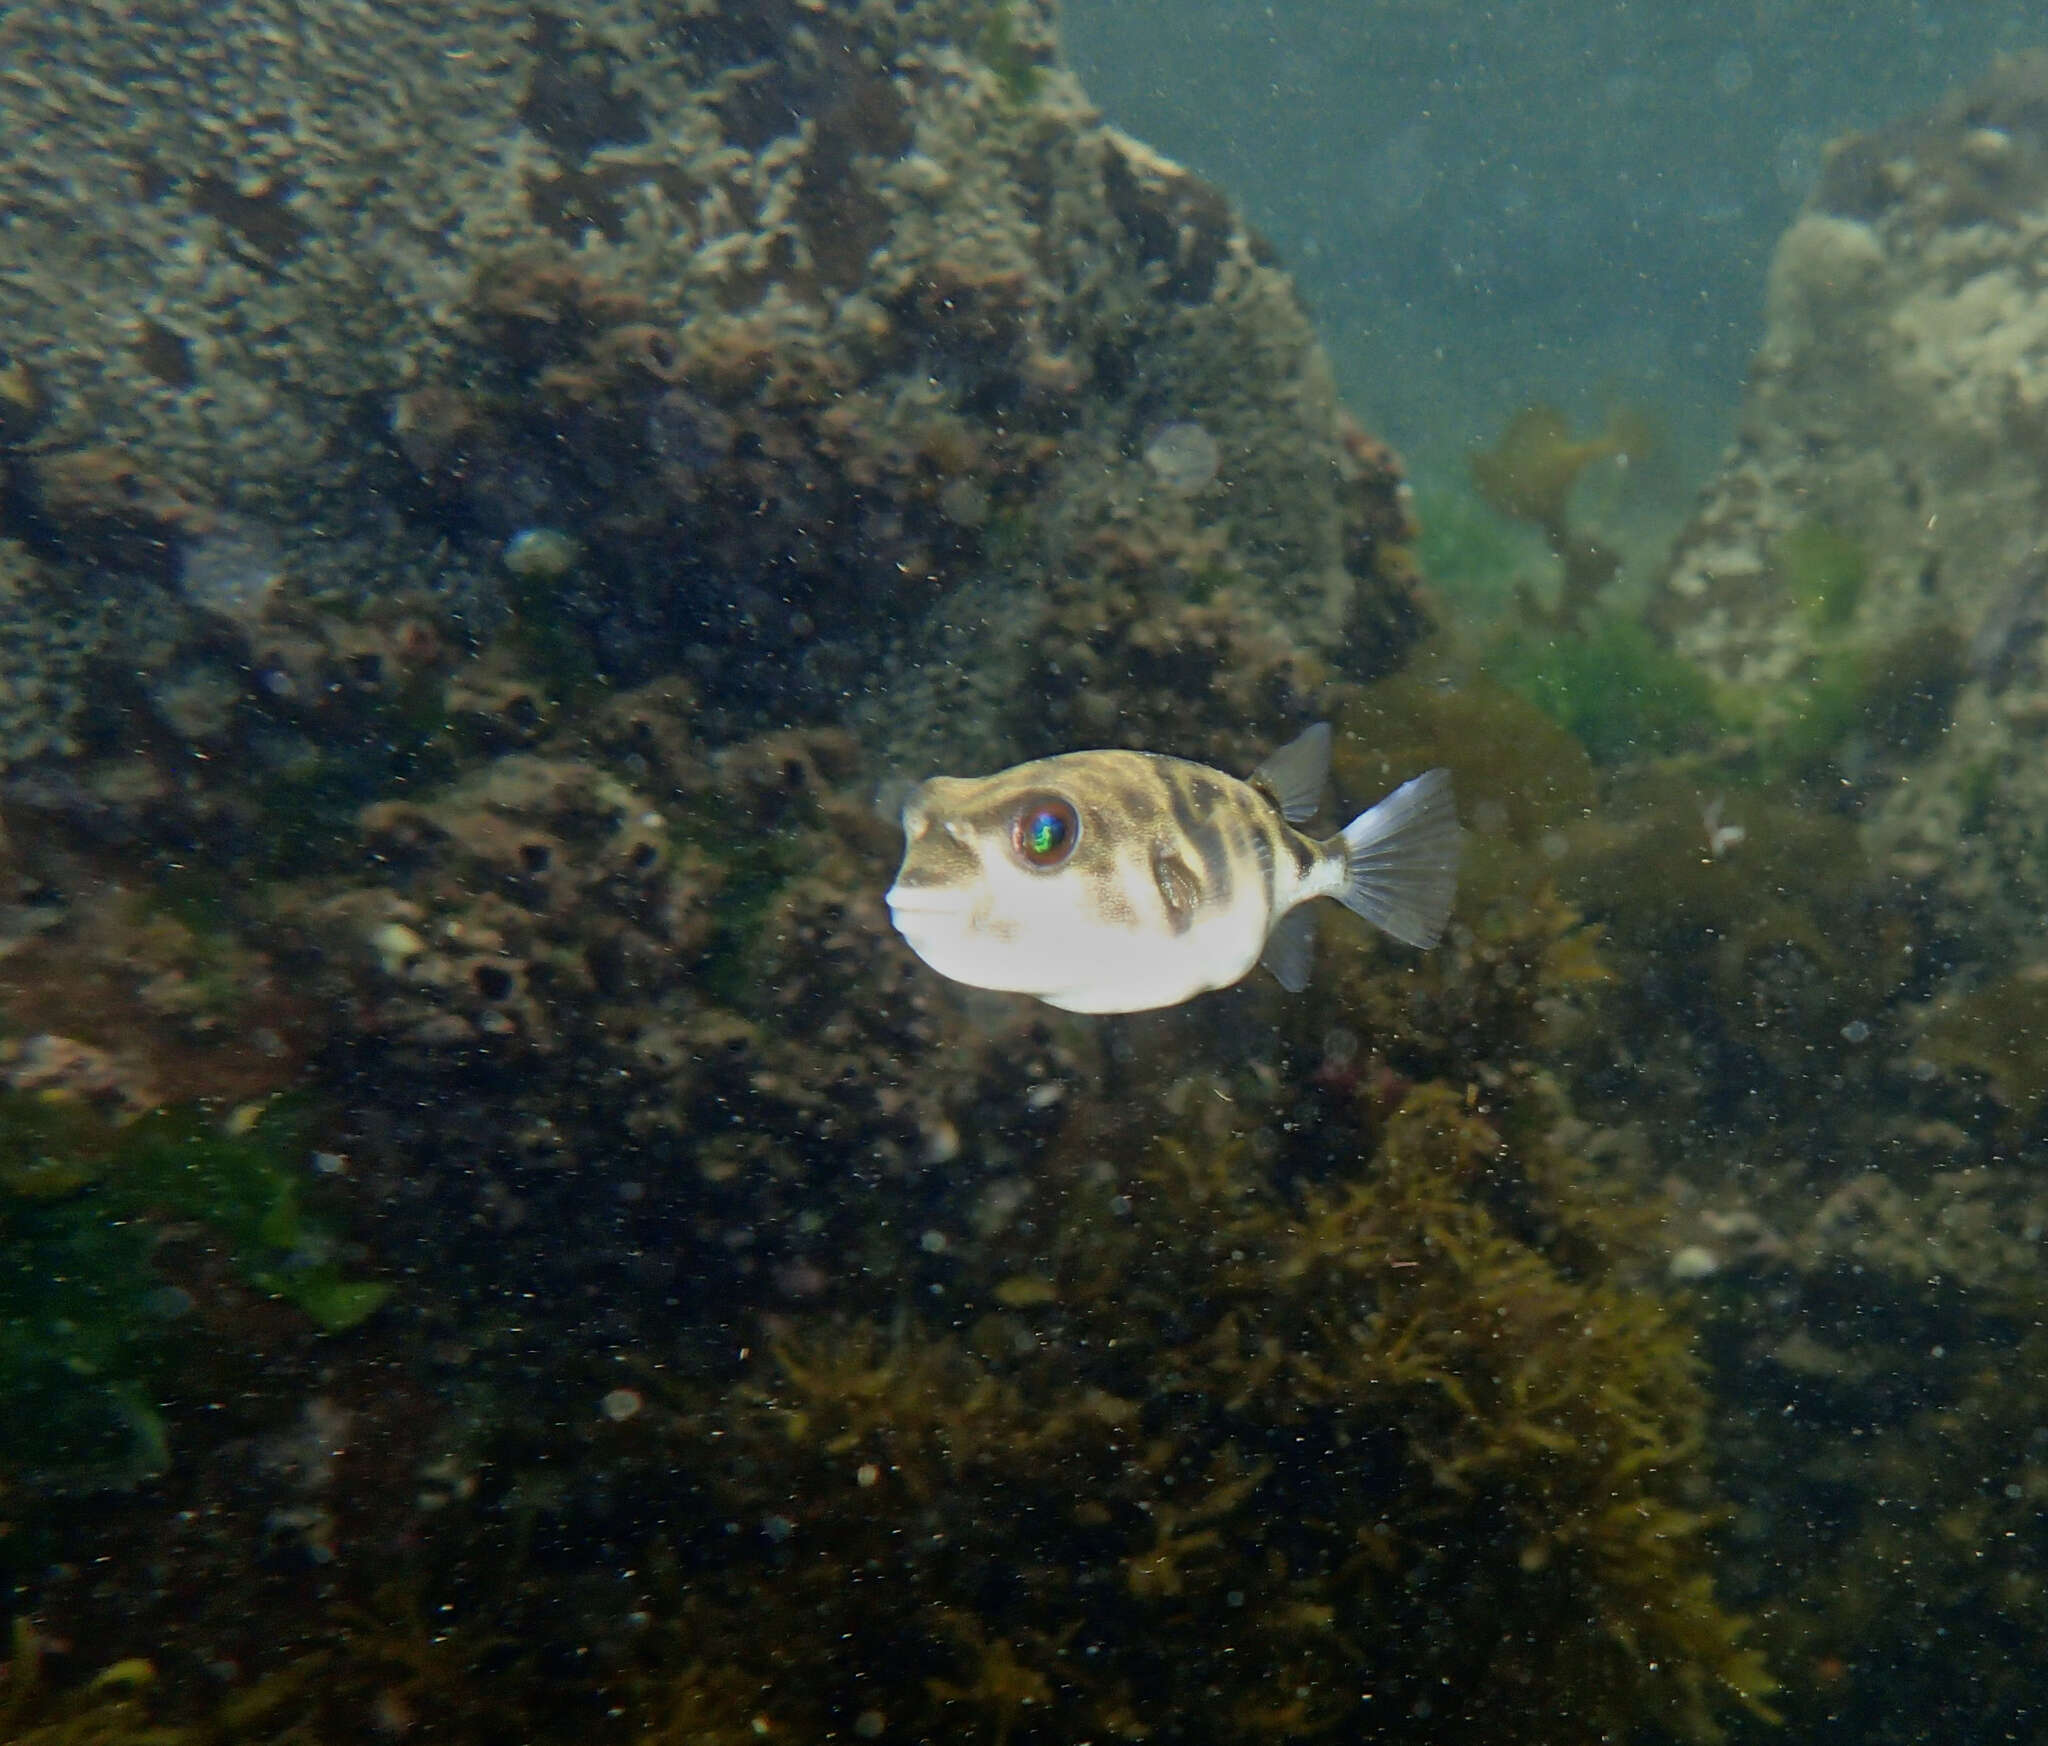 Image of Hardys toadfish